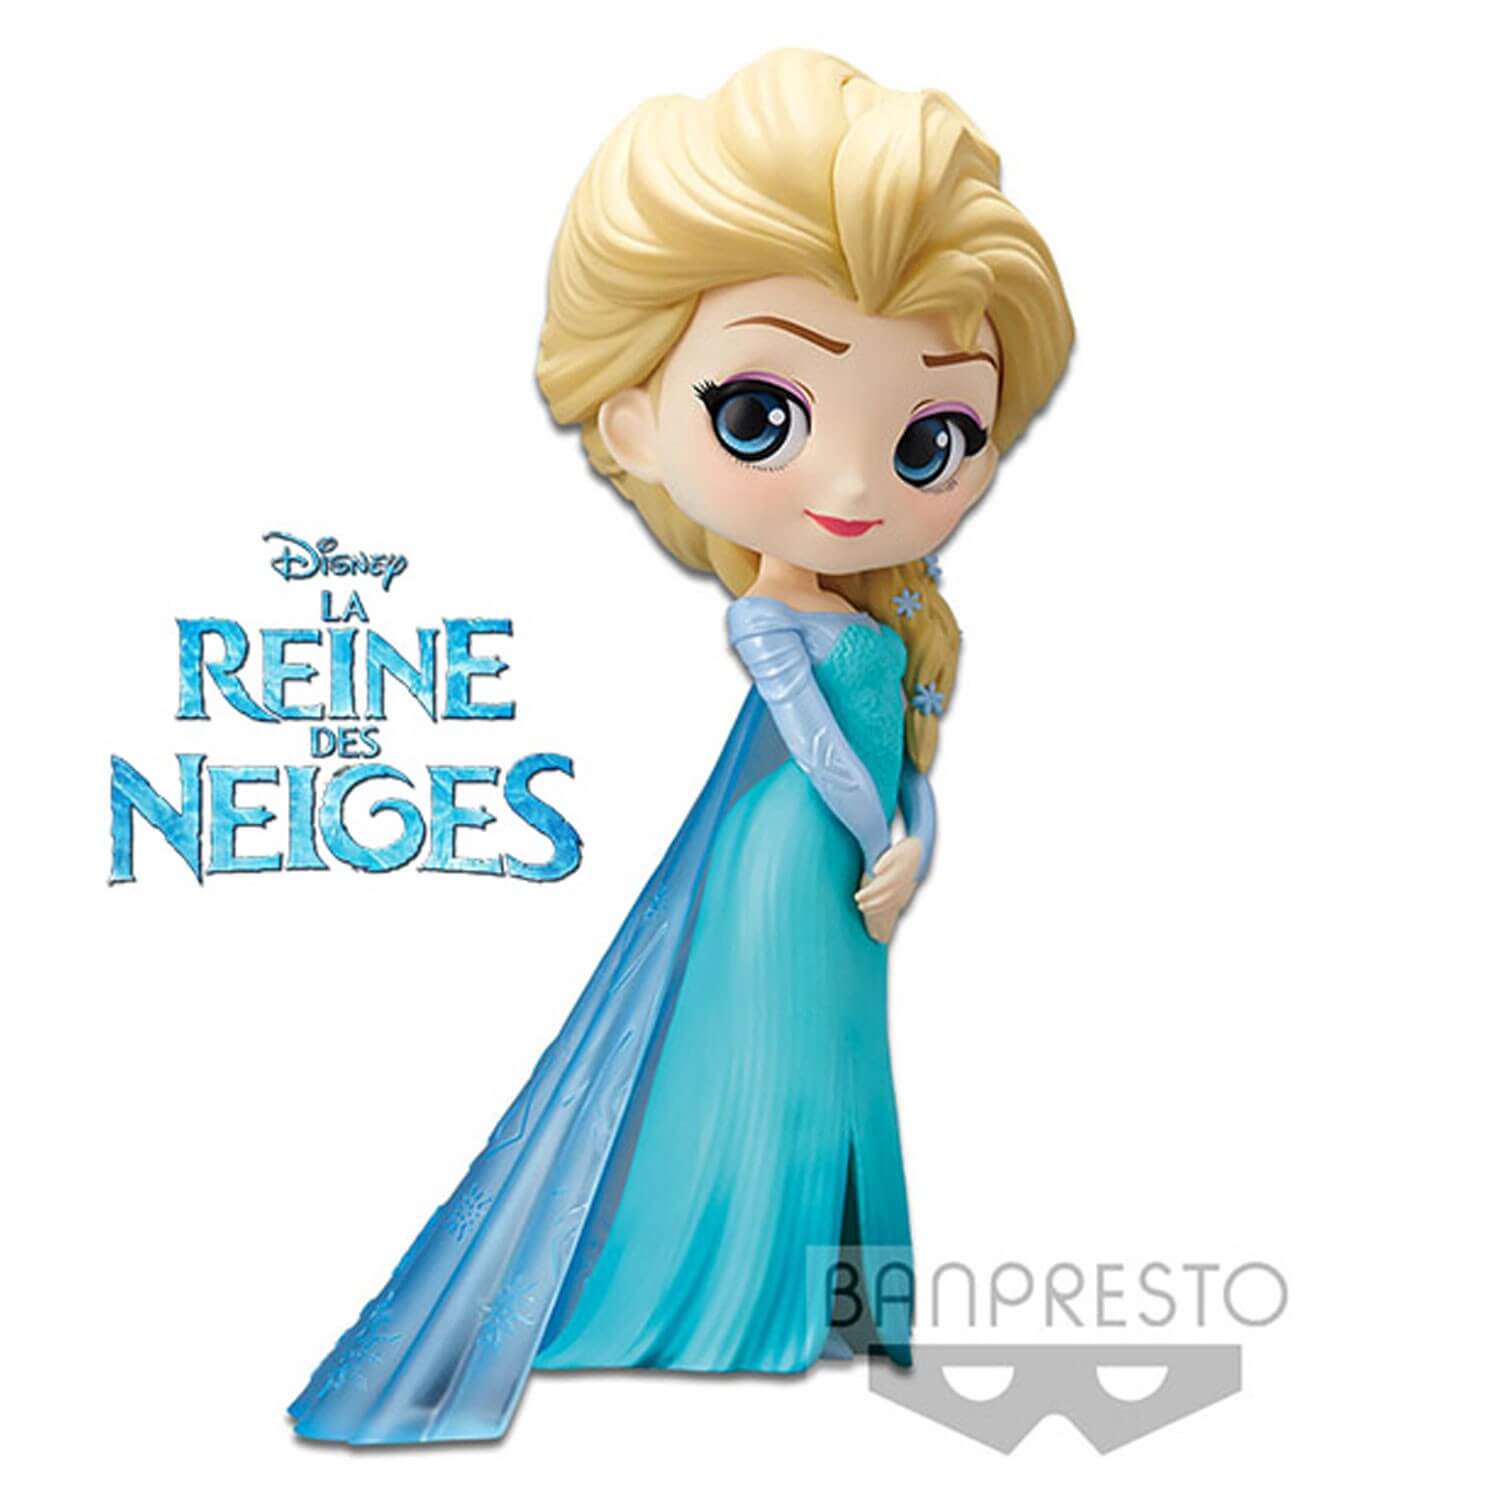 Figurine Disney La Reine des Neiges - Elsa Repro Q Posket 14cm - Ba